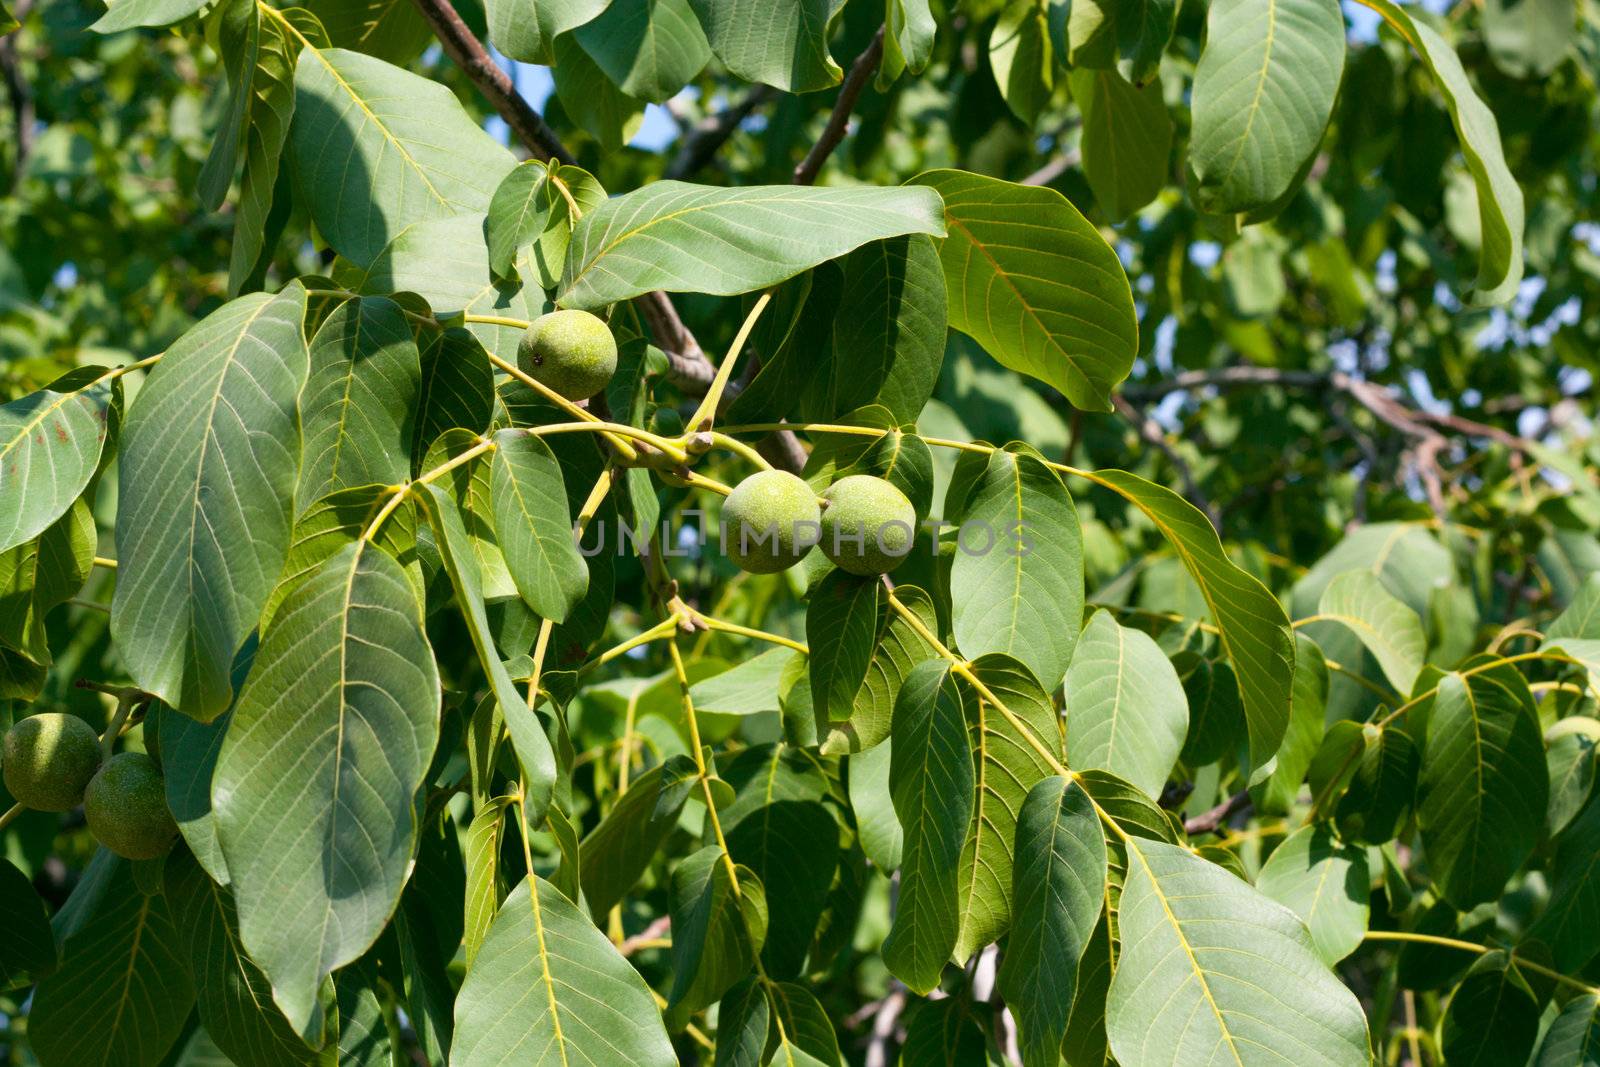 Green walnuts